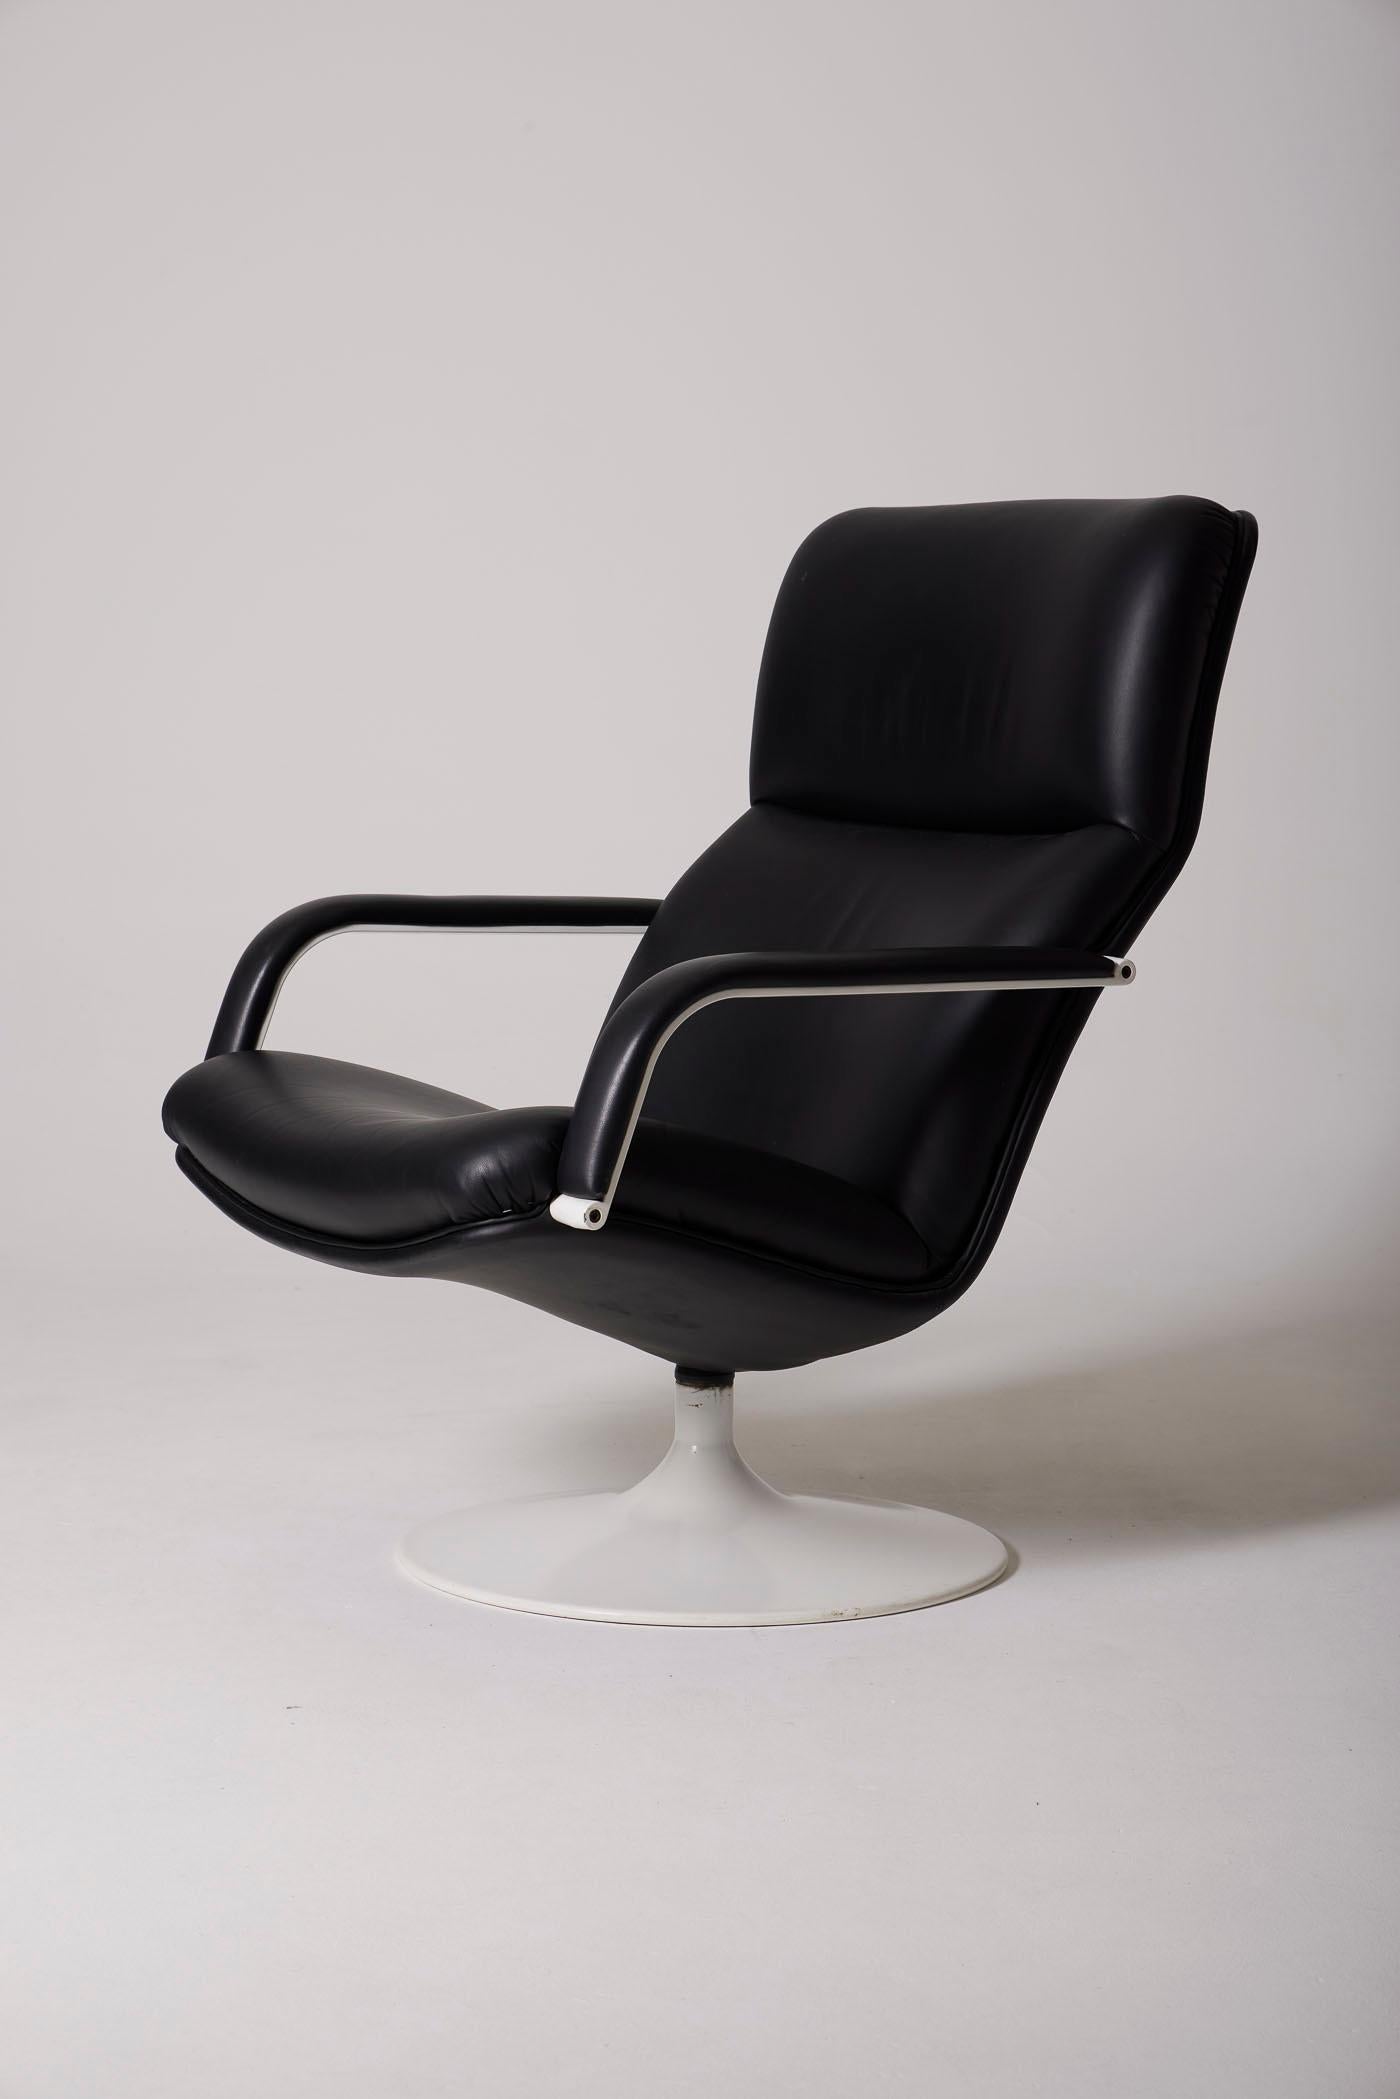 Fauteuil 'F142' du designer Geoffrey Harcourt pour Artifort. L'assise et le dossier sont recouverts de cuir noir. La base est en métal laqué blanc. En bon état.
DV434